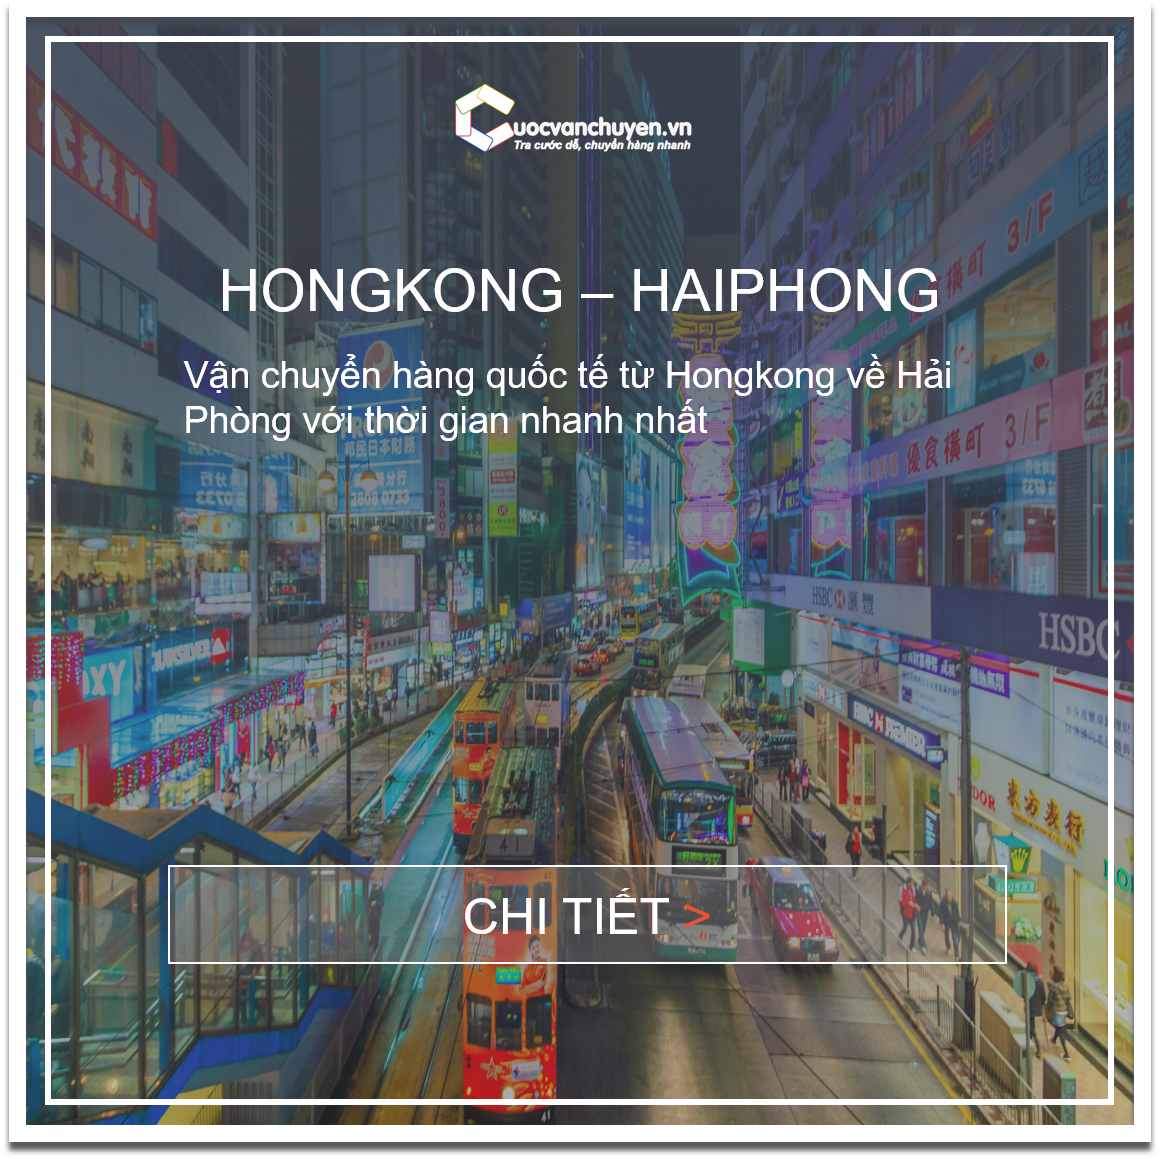 hongkong-haiphong-cuocvanchuyen_vn(1).png